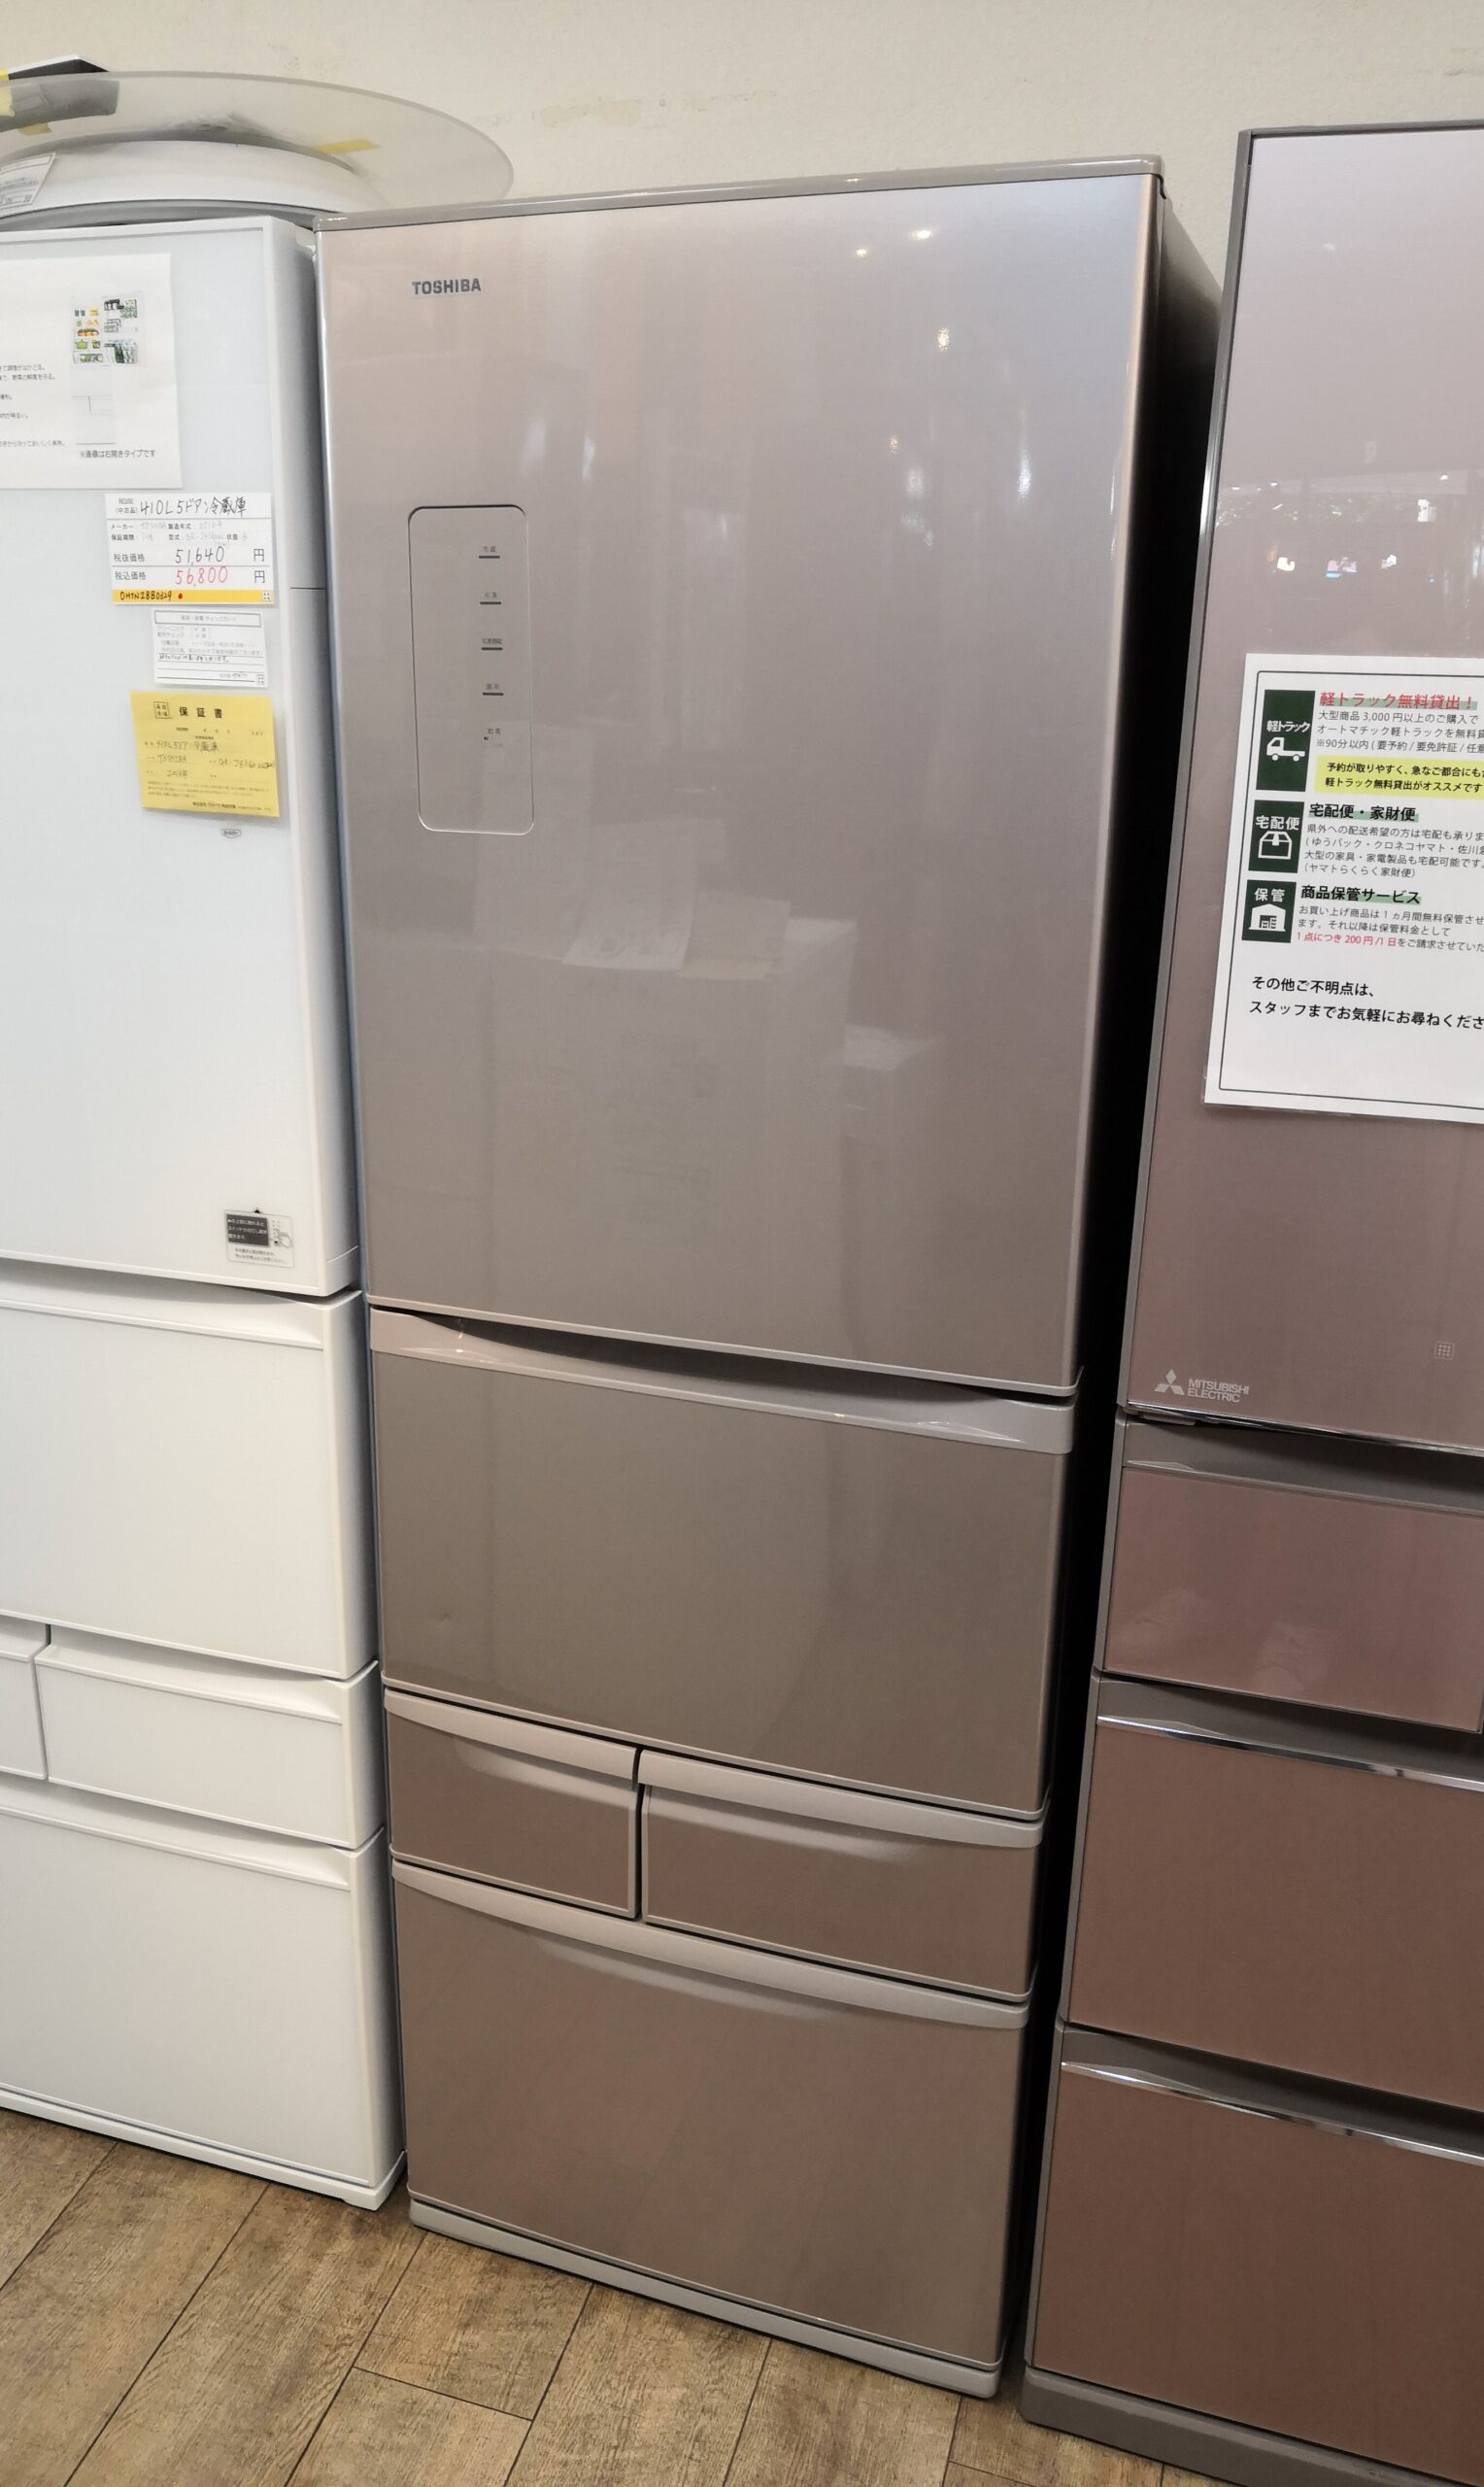 東芝ノンフロン冷凍冷蔵庫 GR-G51FX（N）2013年制 - 冷蔵庫